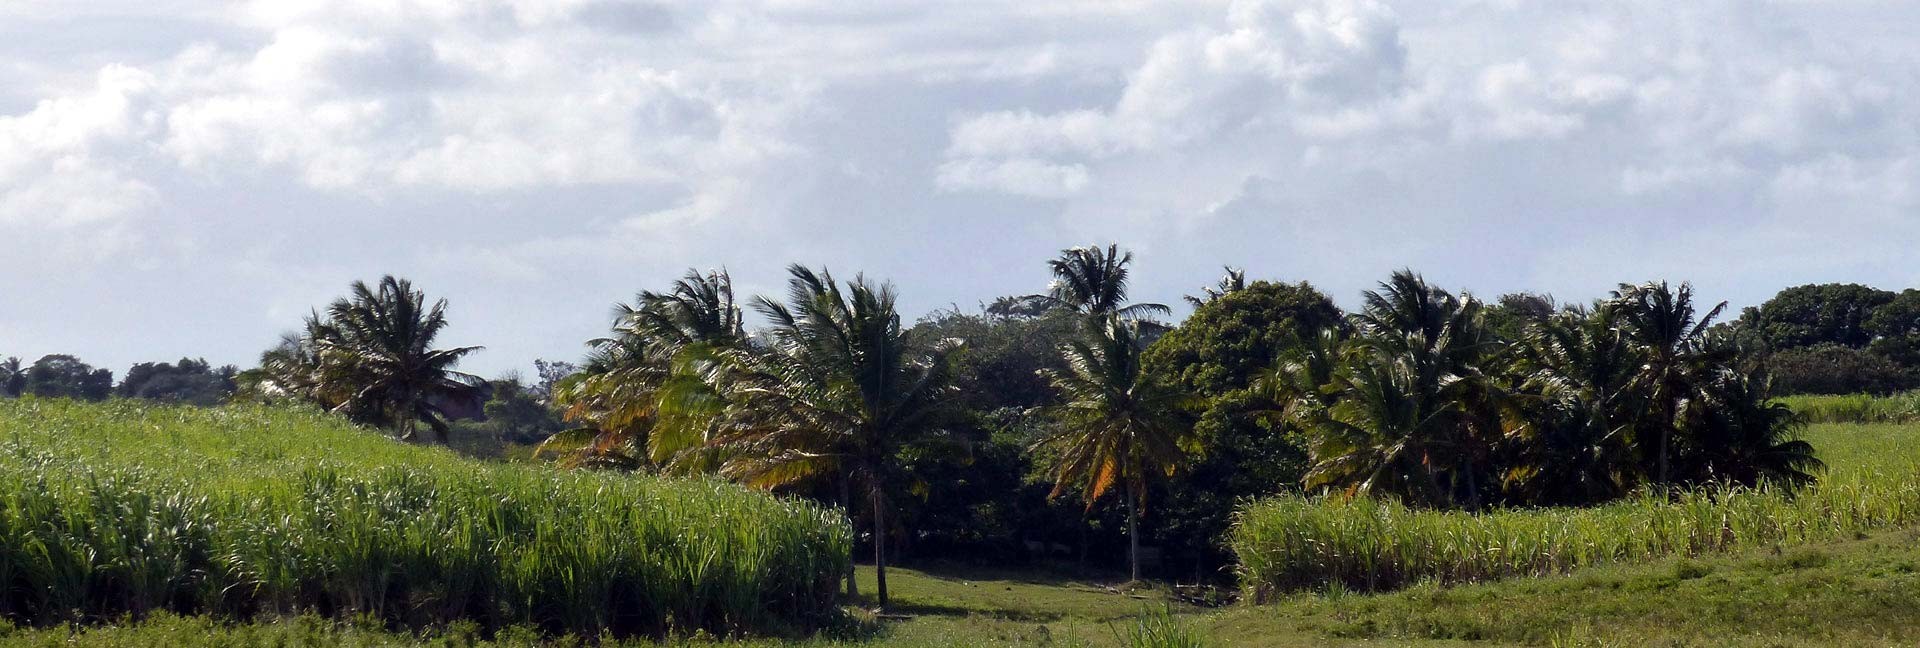 Cocotiers et champs de cannes à sucre aux Antilles